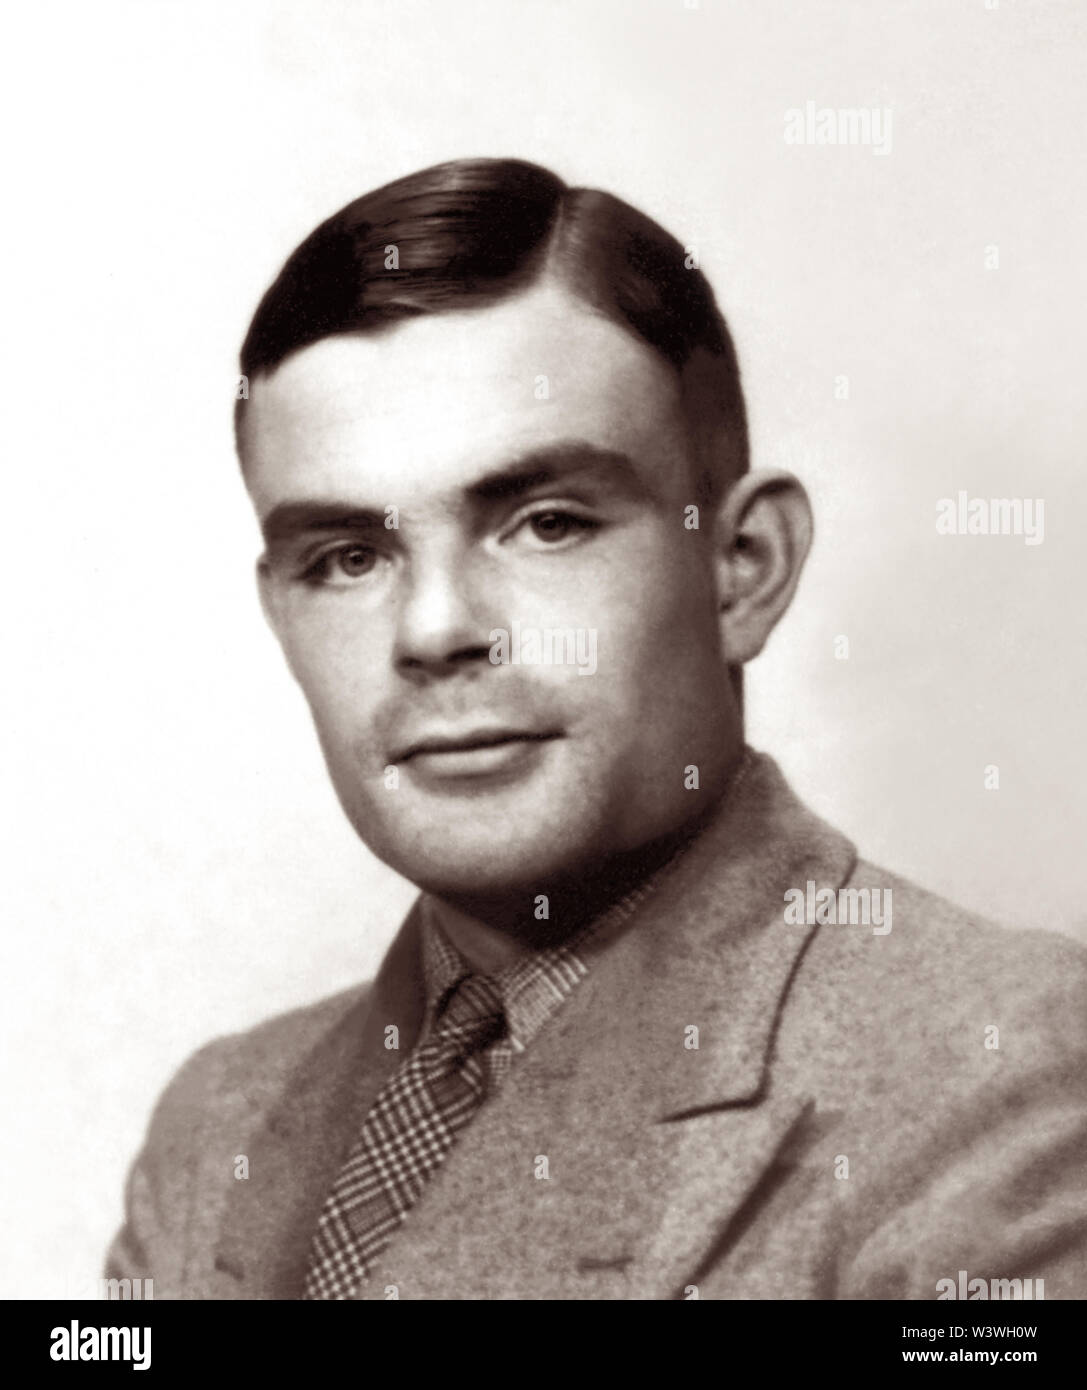 Alan Turing Mathison (1912-1954), un matematico britannico, è ampiamente considerato come il padre di informatica teorica e di intelligenza artificiale. Durante la Seconda Guerra Mondiale ha lavorato per il governo di codice e Cypher scuola a Bletchley Park, la Gran Bretagna è codebreaking centre che ha prodotto Ultra intelligence. Per un po' di Turing capanna di led 8, la sezione competente per il tedesco di crittoanalisi navale. Alan Turing ha svolto un ruolo cruciale nel cracking intercettato i messaggi codificati che ha contribuito a consentire agli alleati di sconfiggere i nazisti. (Foto circa 1930s) Foto Stock